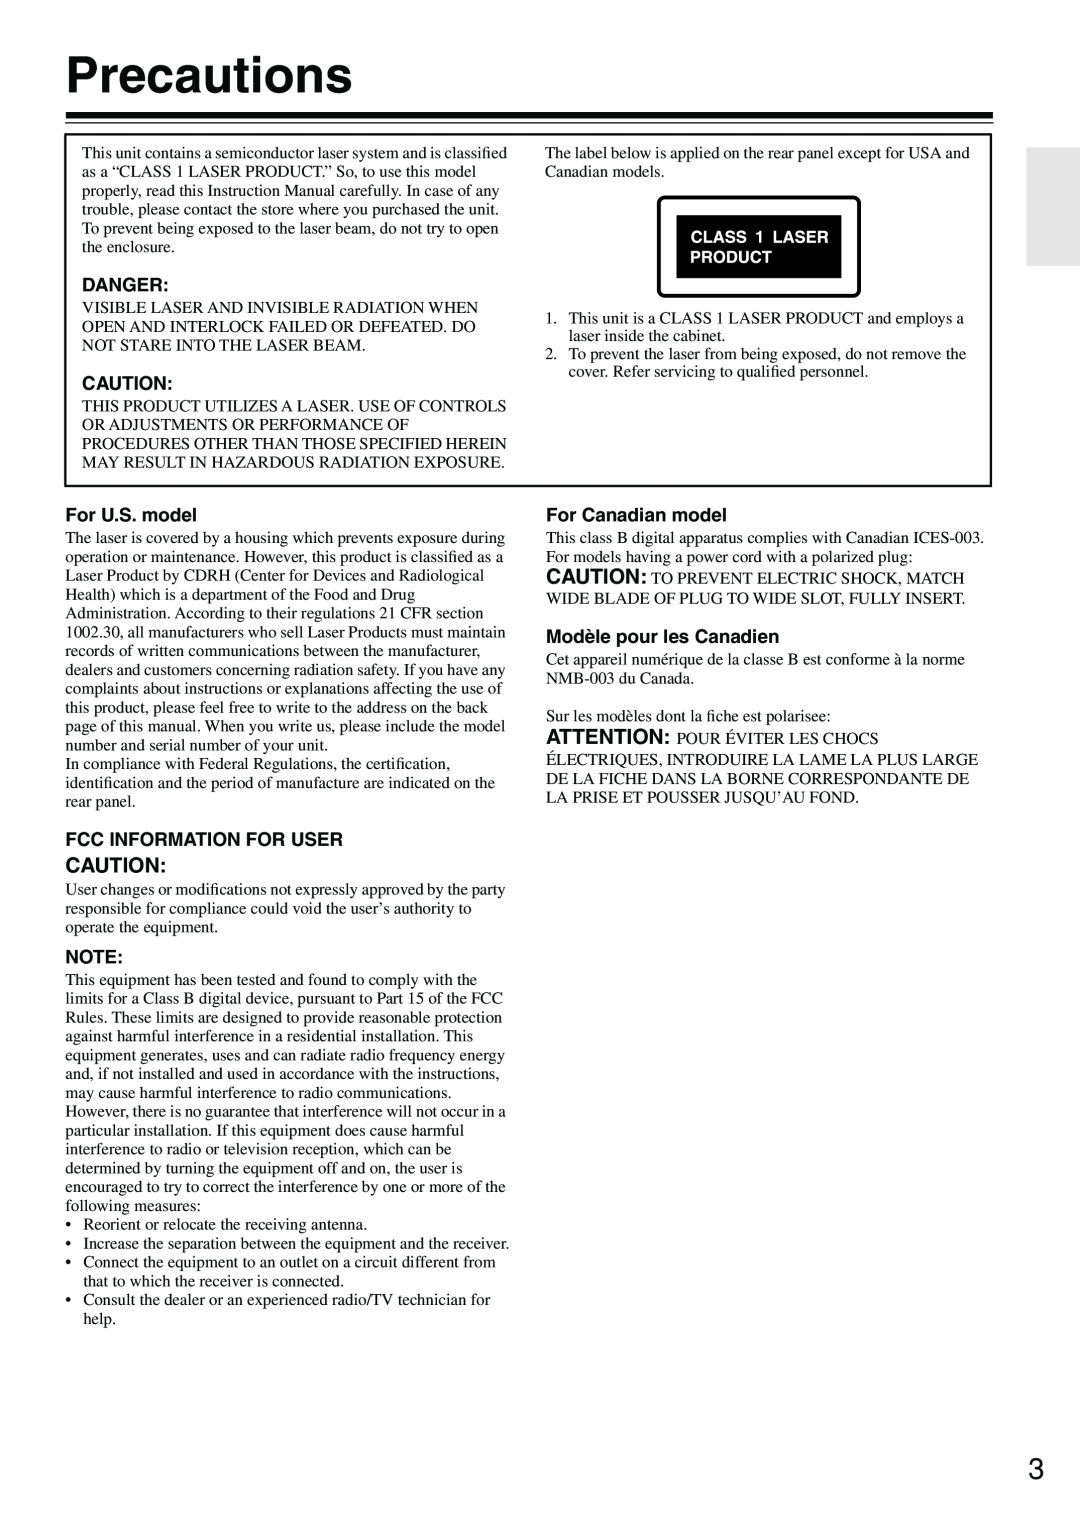 Onkyo DV-SP302 Precautions, Danger, For U.S. model, Fcc Information For User, For Canadian model, Modèle pour les Canadien 